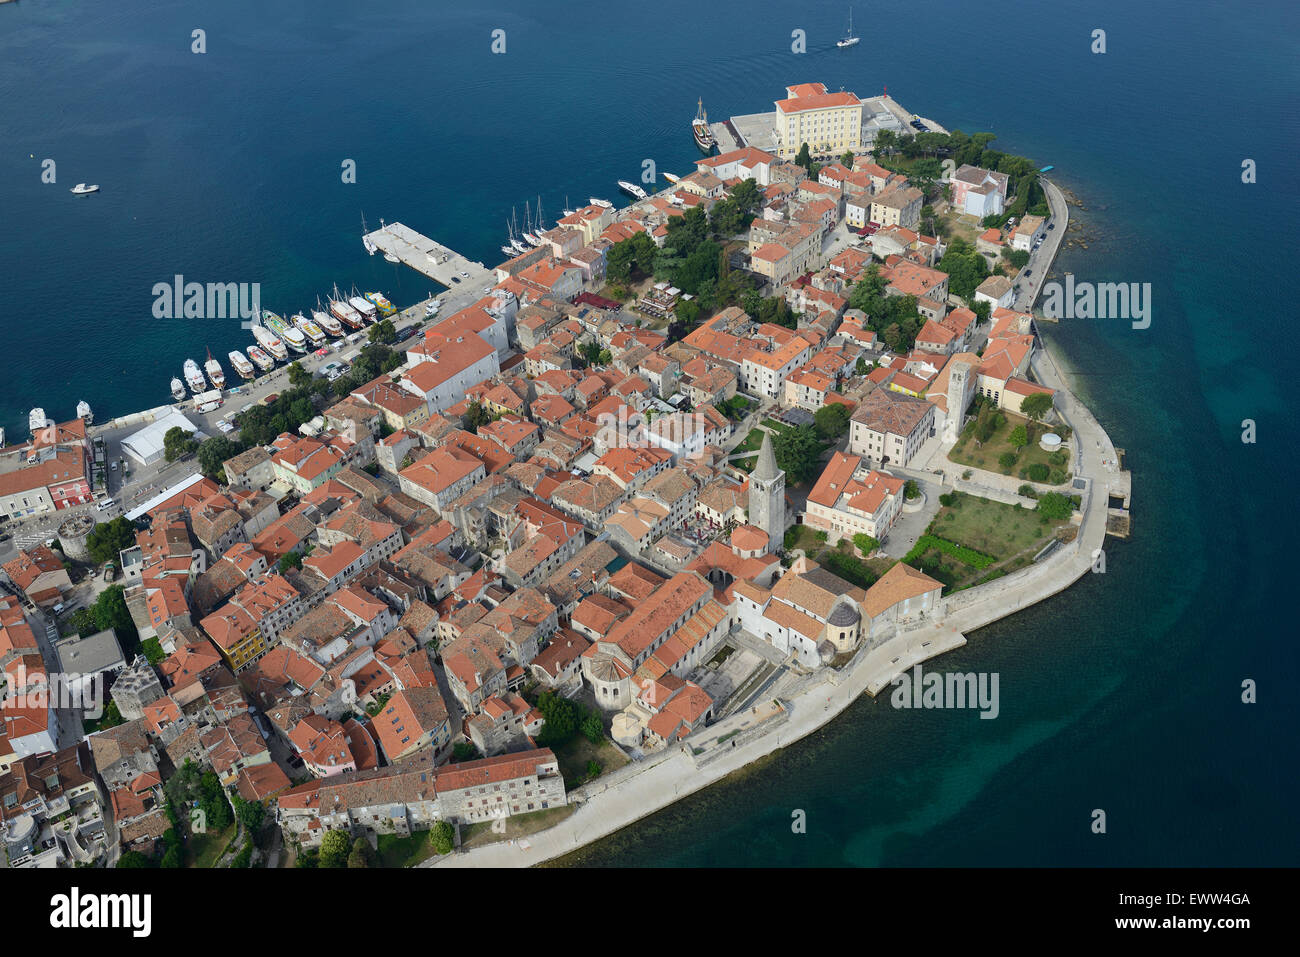 LUFTBILD. Mittelalterliche Stadt auf einer Halbinsel an der Adria. Porec (auch bekannt als Parenzo, sein italienischer Name), Istrien, Kroatien. Stockfoto